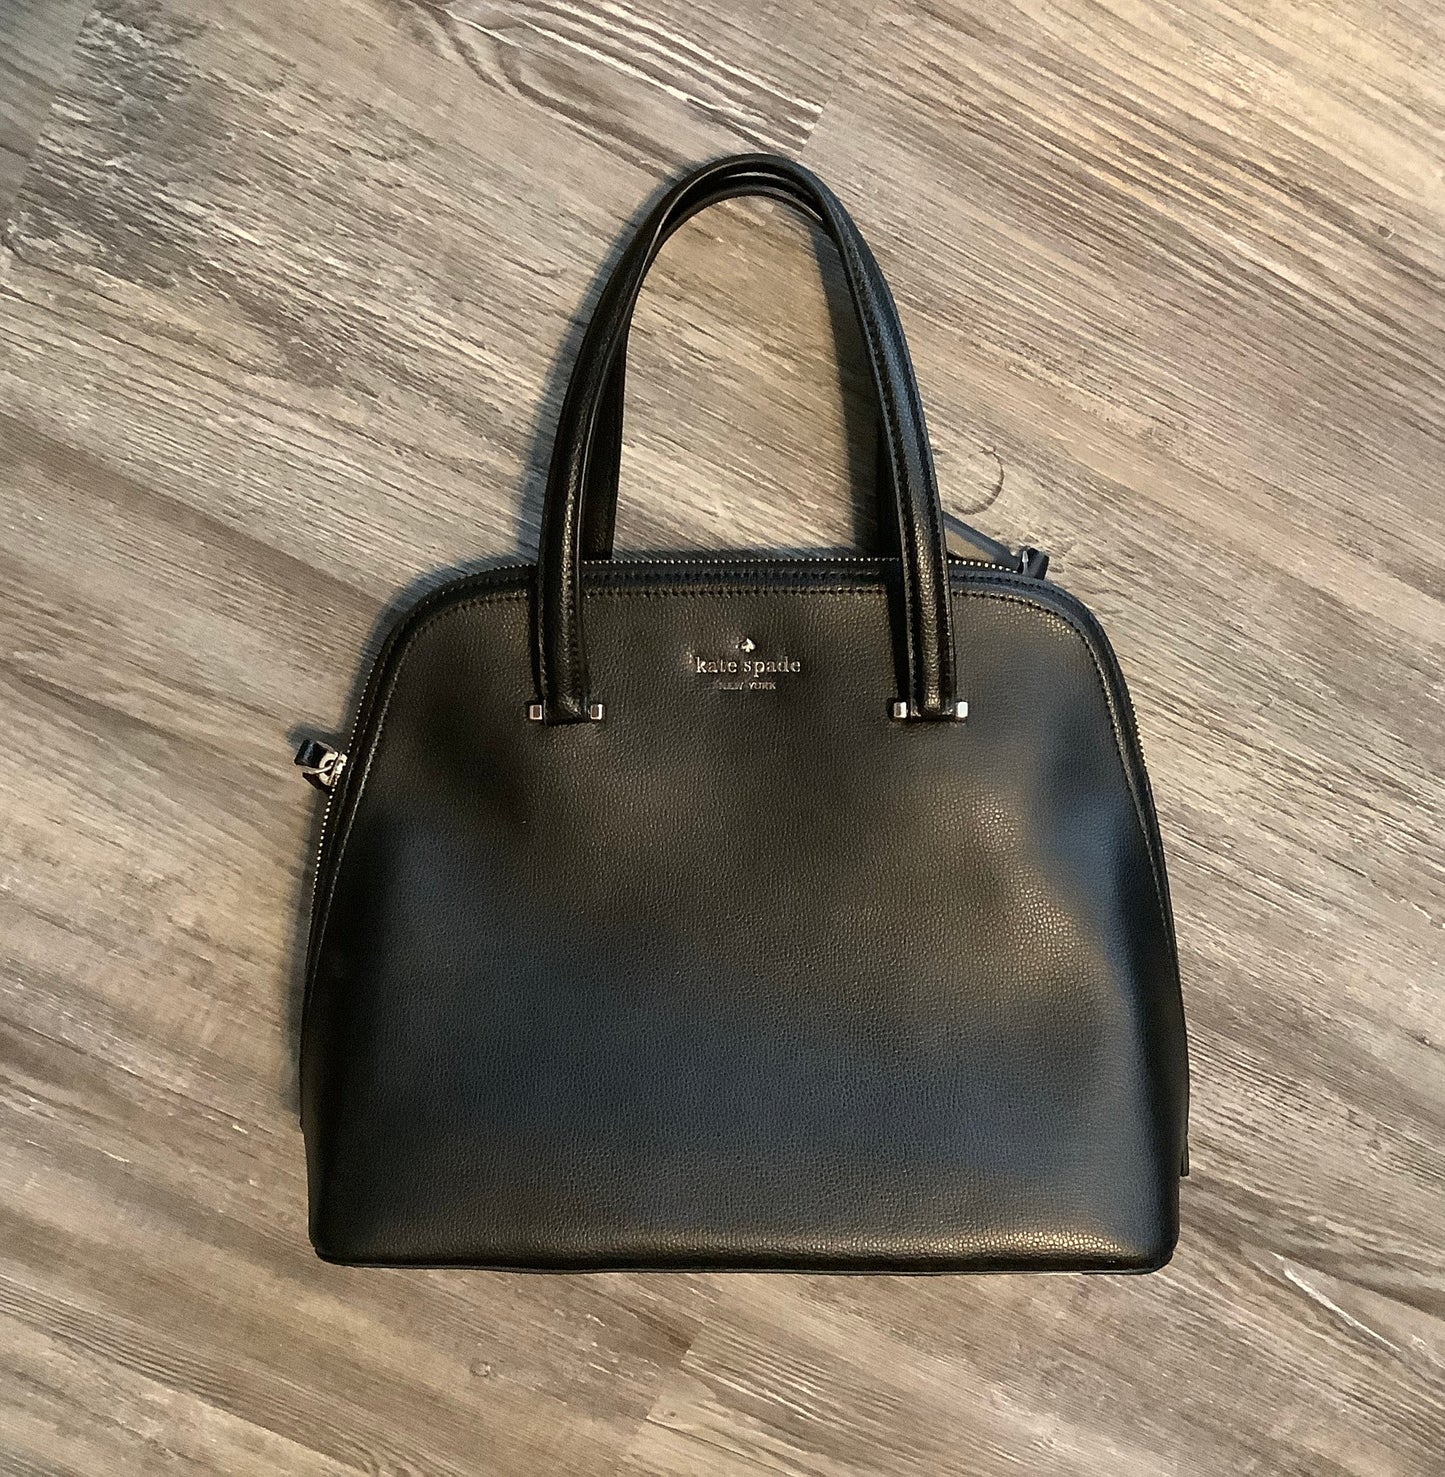 Handbag Kate Spade, Size Medium